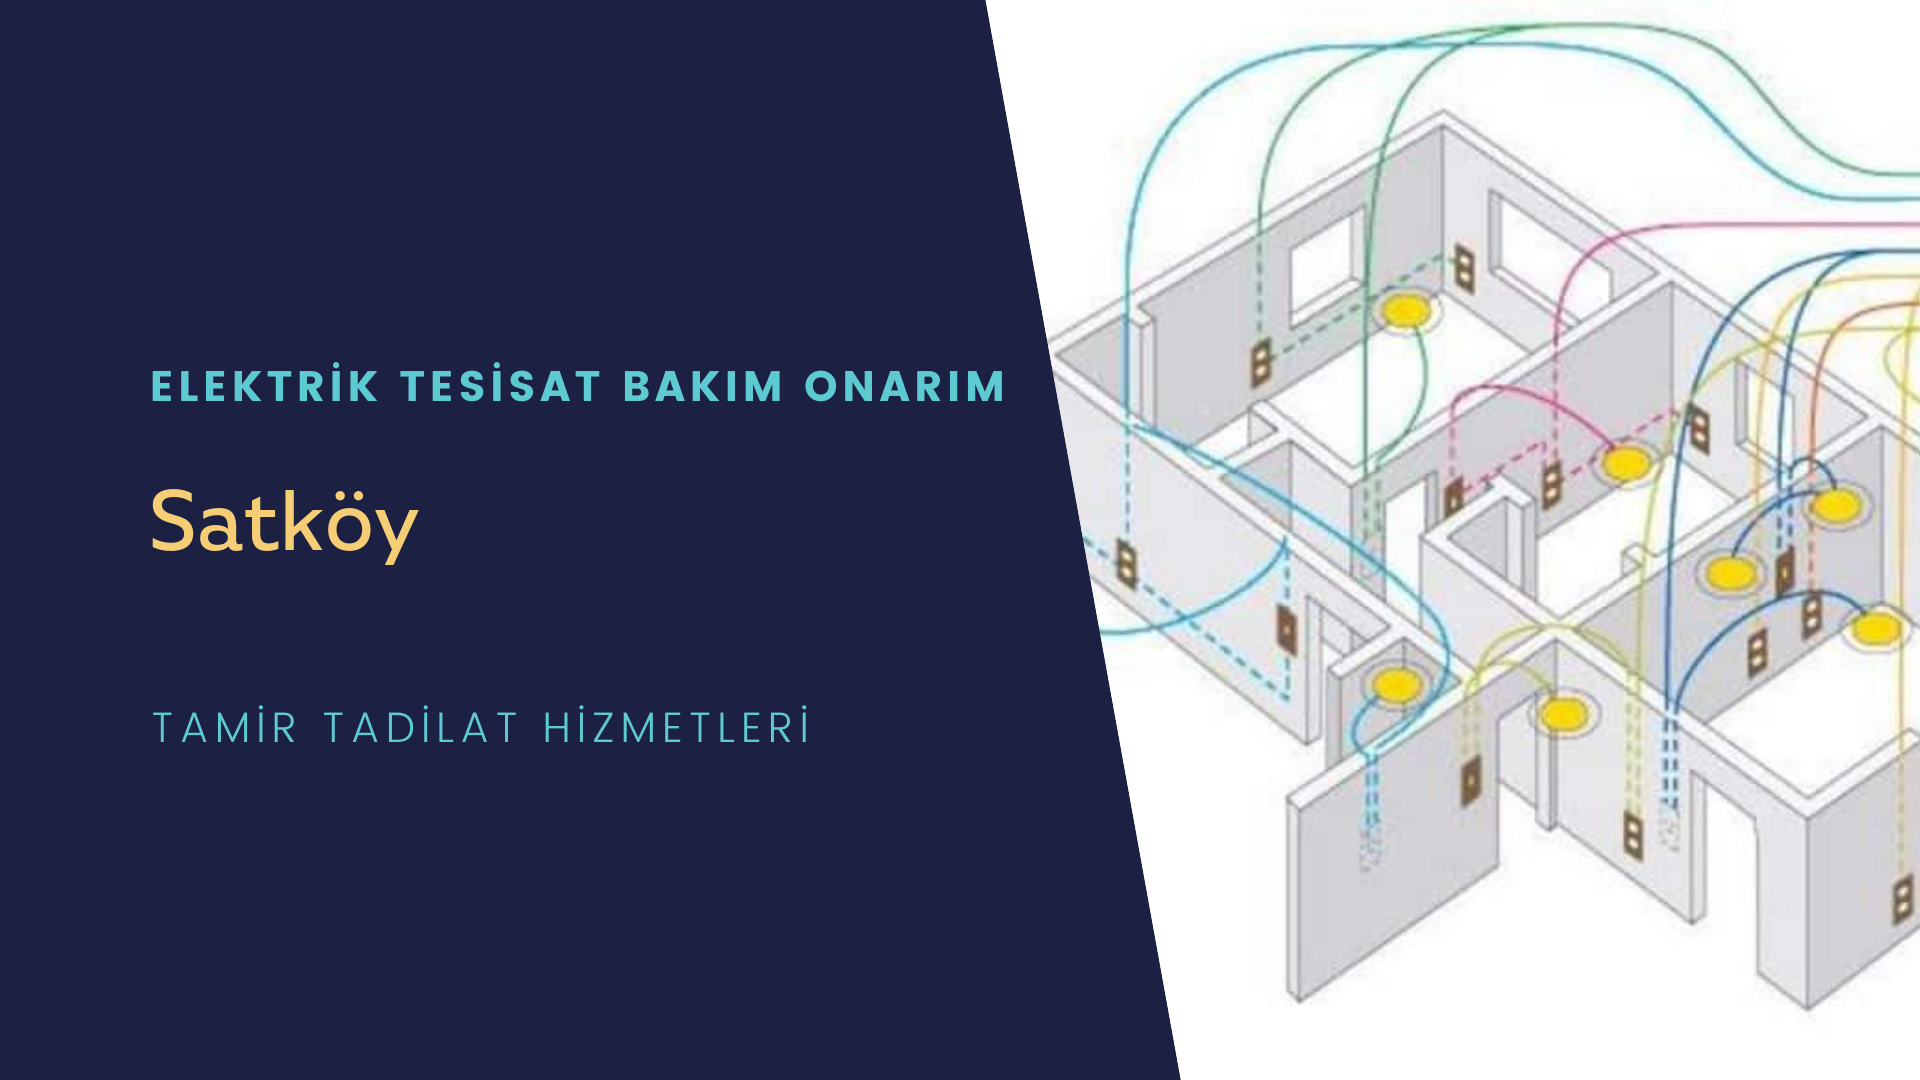 Satköy'de elektrik tesisatı ustalarımı arıyorsunuz doğru adrestenizi Satköy elektrik tesisatı ustalarımız 7/24 sizlere hizmet vermekten mutluluk duyar.